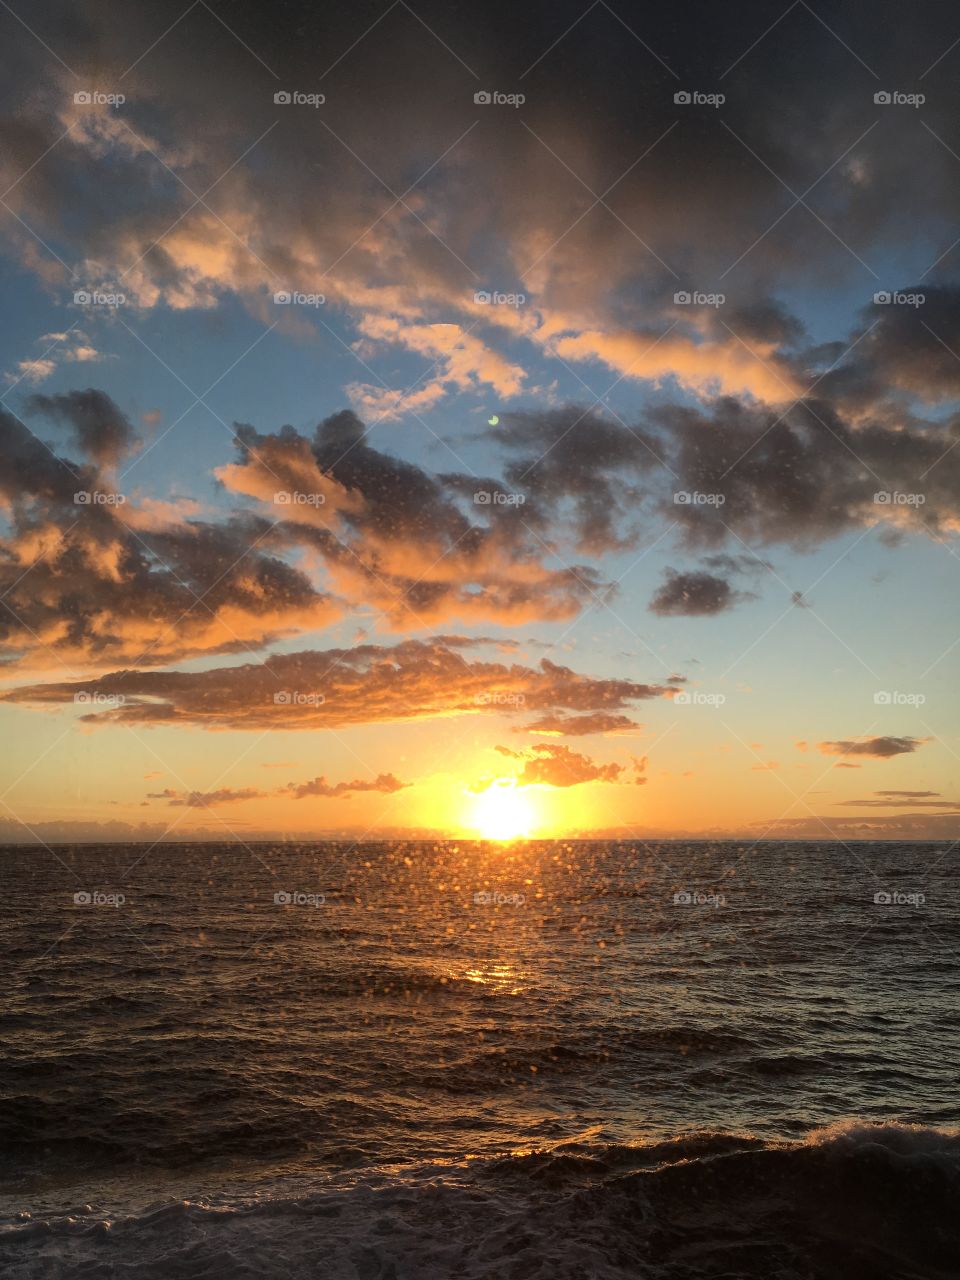 Stunning sunset at sea